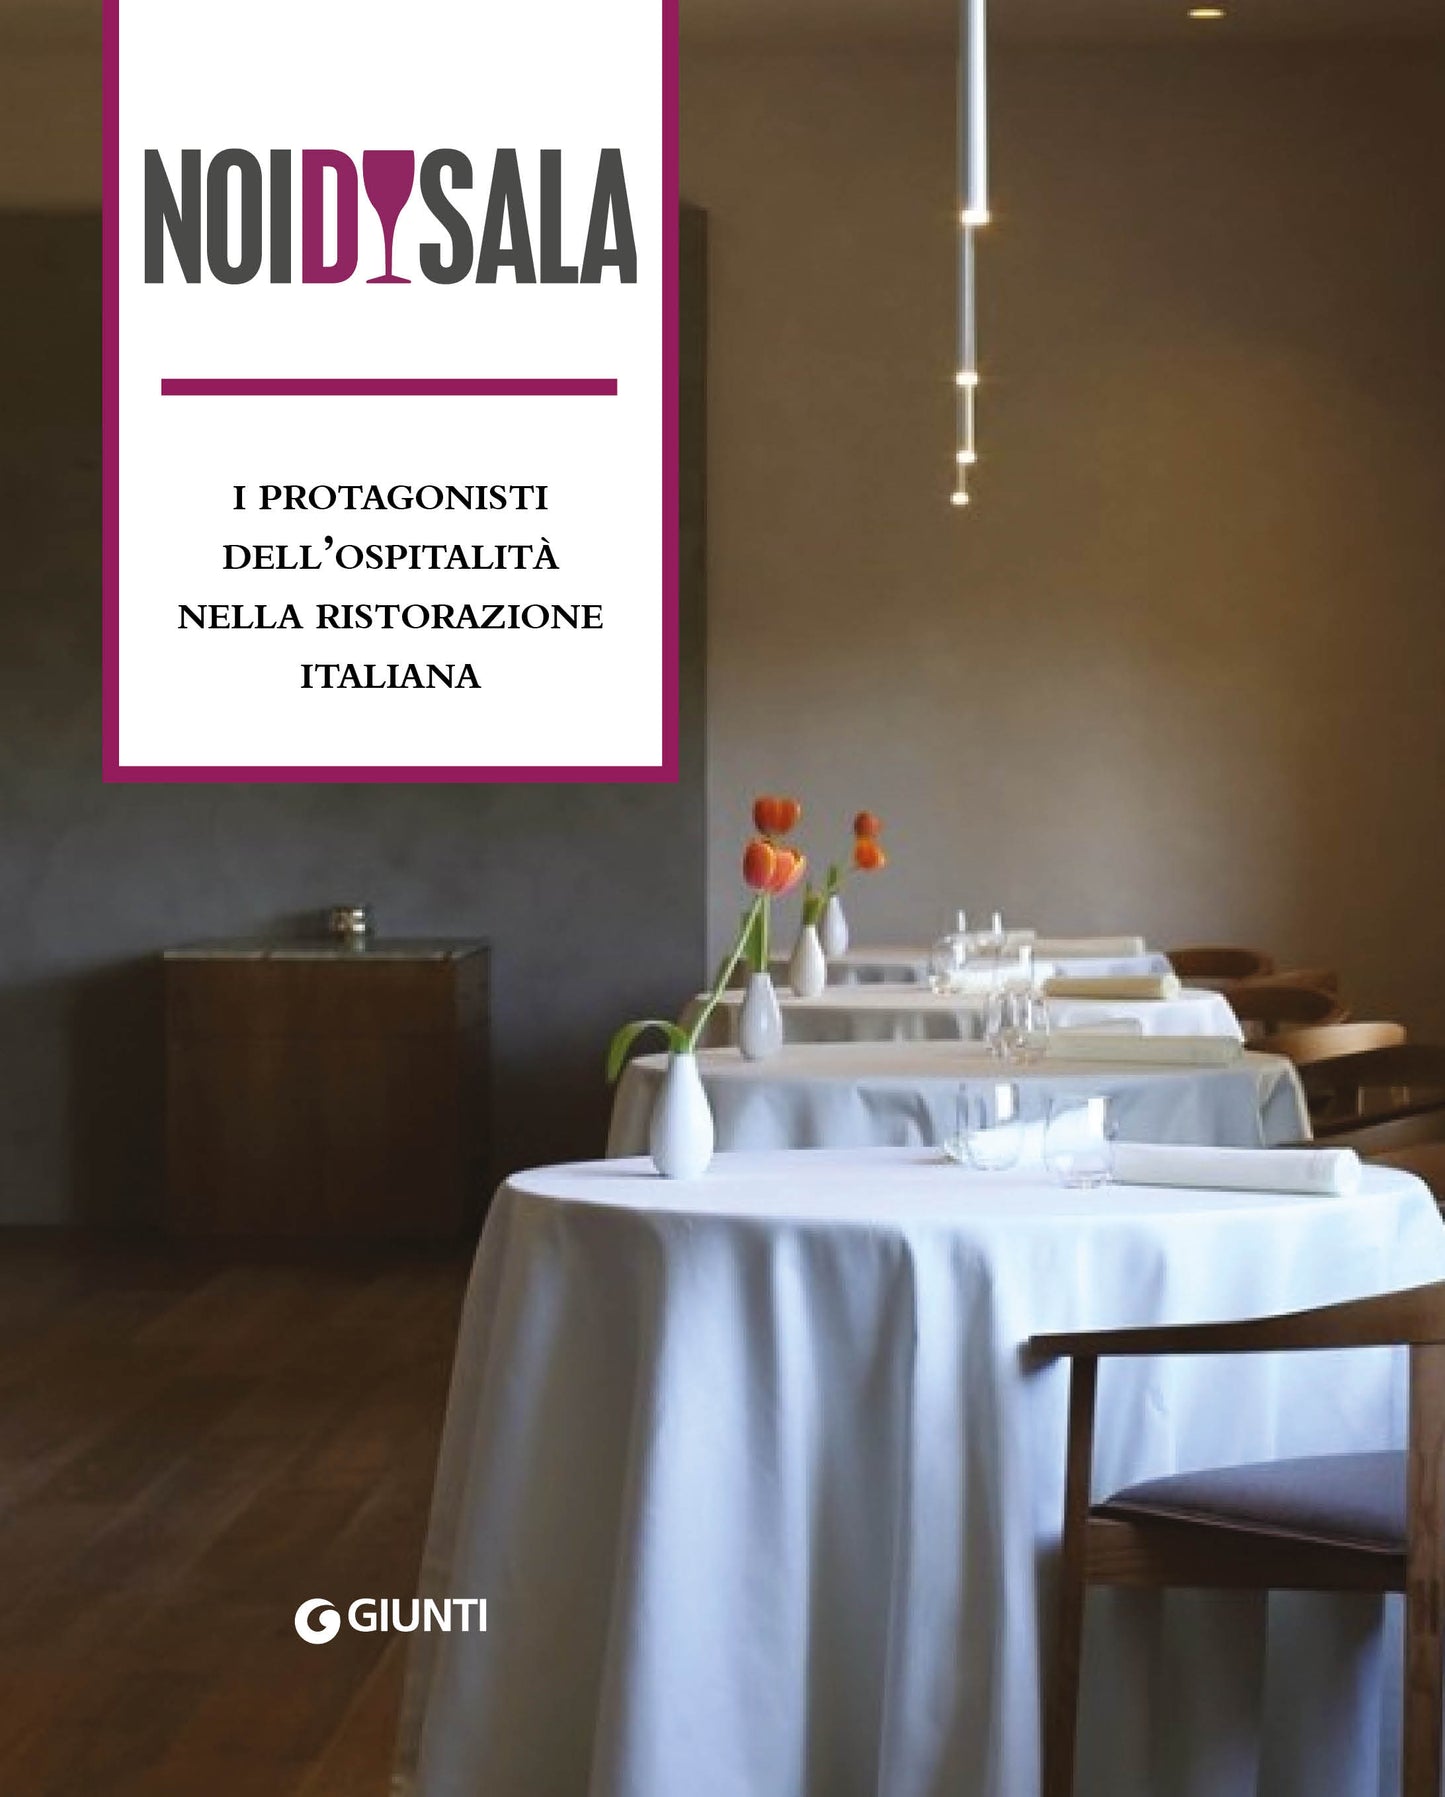 Noi di sala::I protagonisti dell'ospitalità nella ristorazione italiana